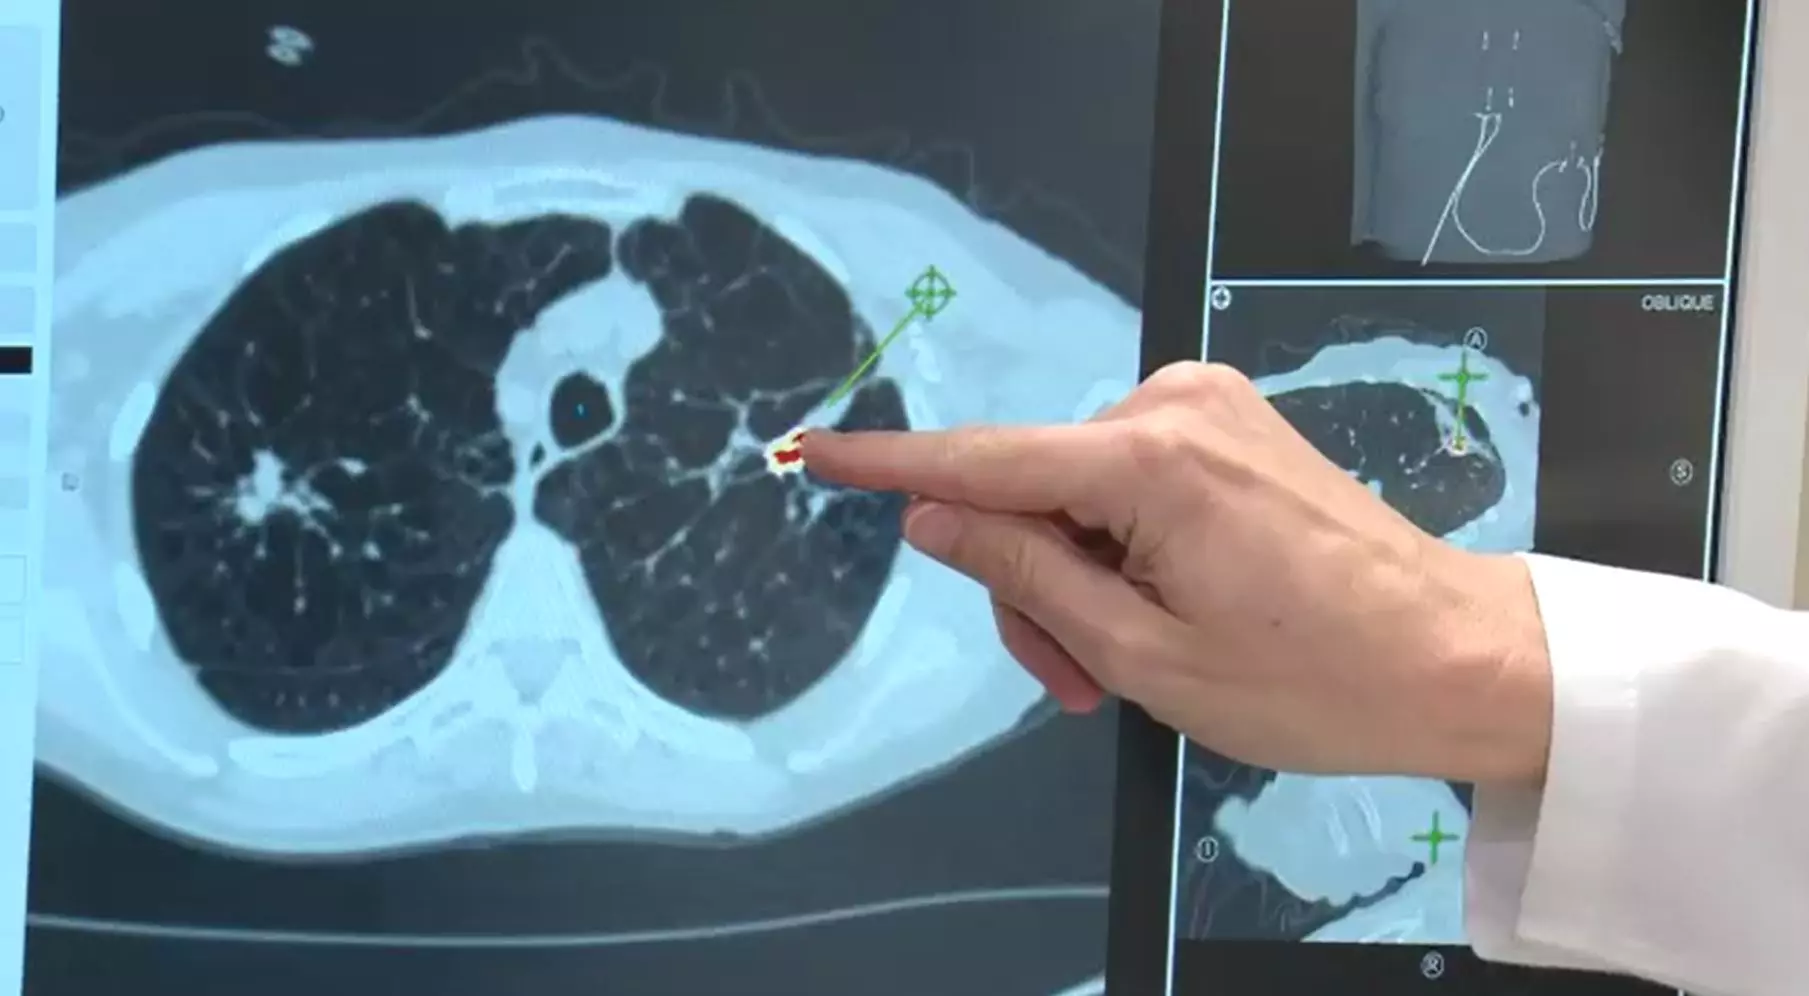 Ung thư phổi giai đoạn 4 là giai đoạn muộn của bệnh